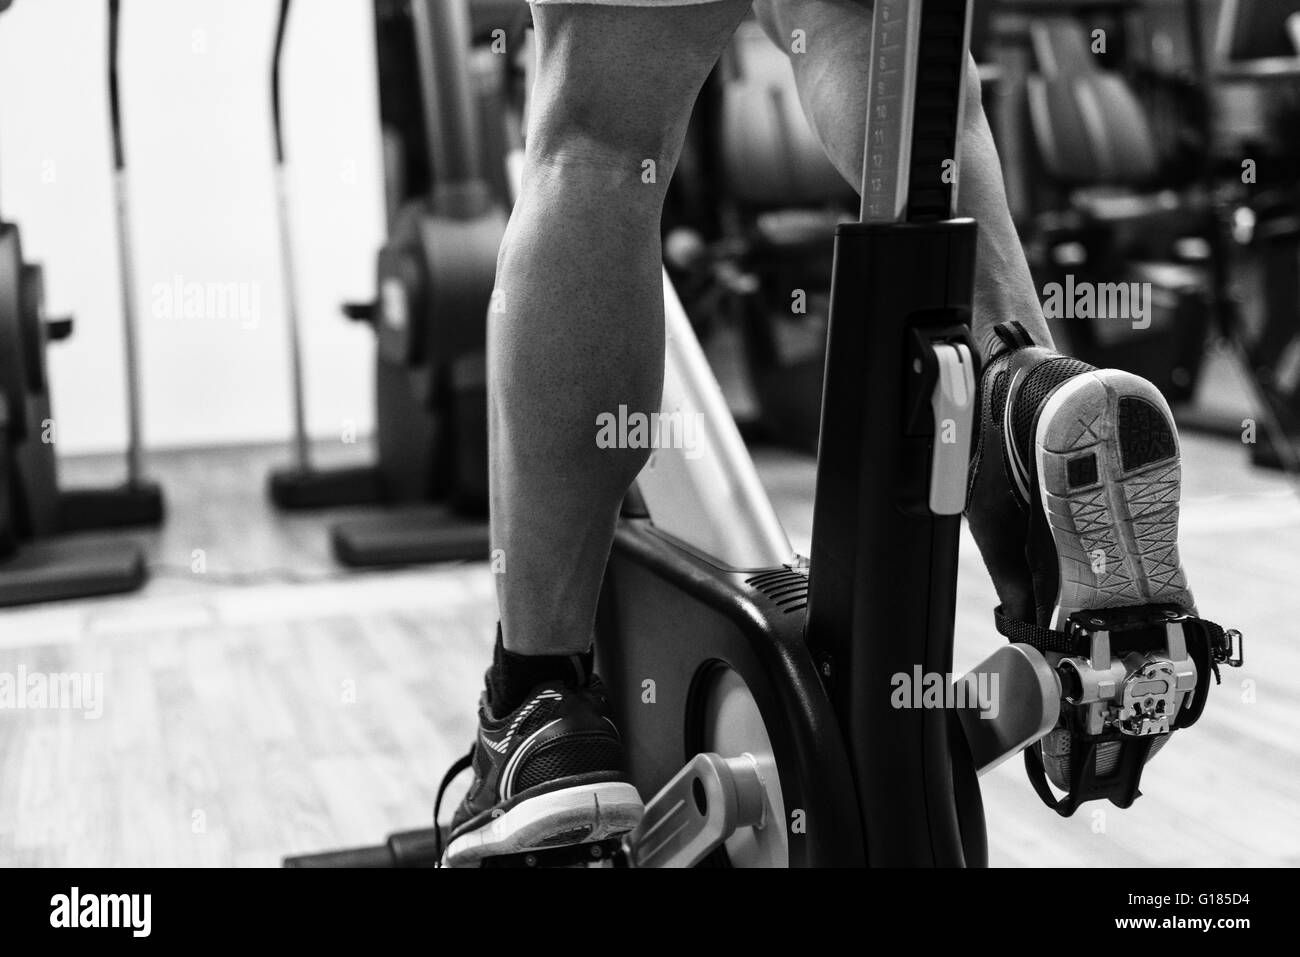 Mann In der Turnhalle - Ausübung seiner Beine tun Cardio-Training auf dem Fahrrad Stockfoto